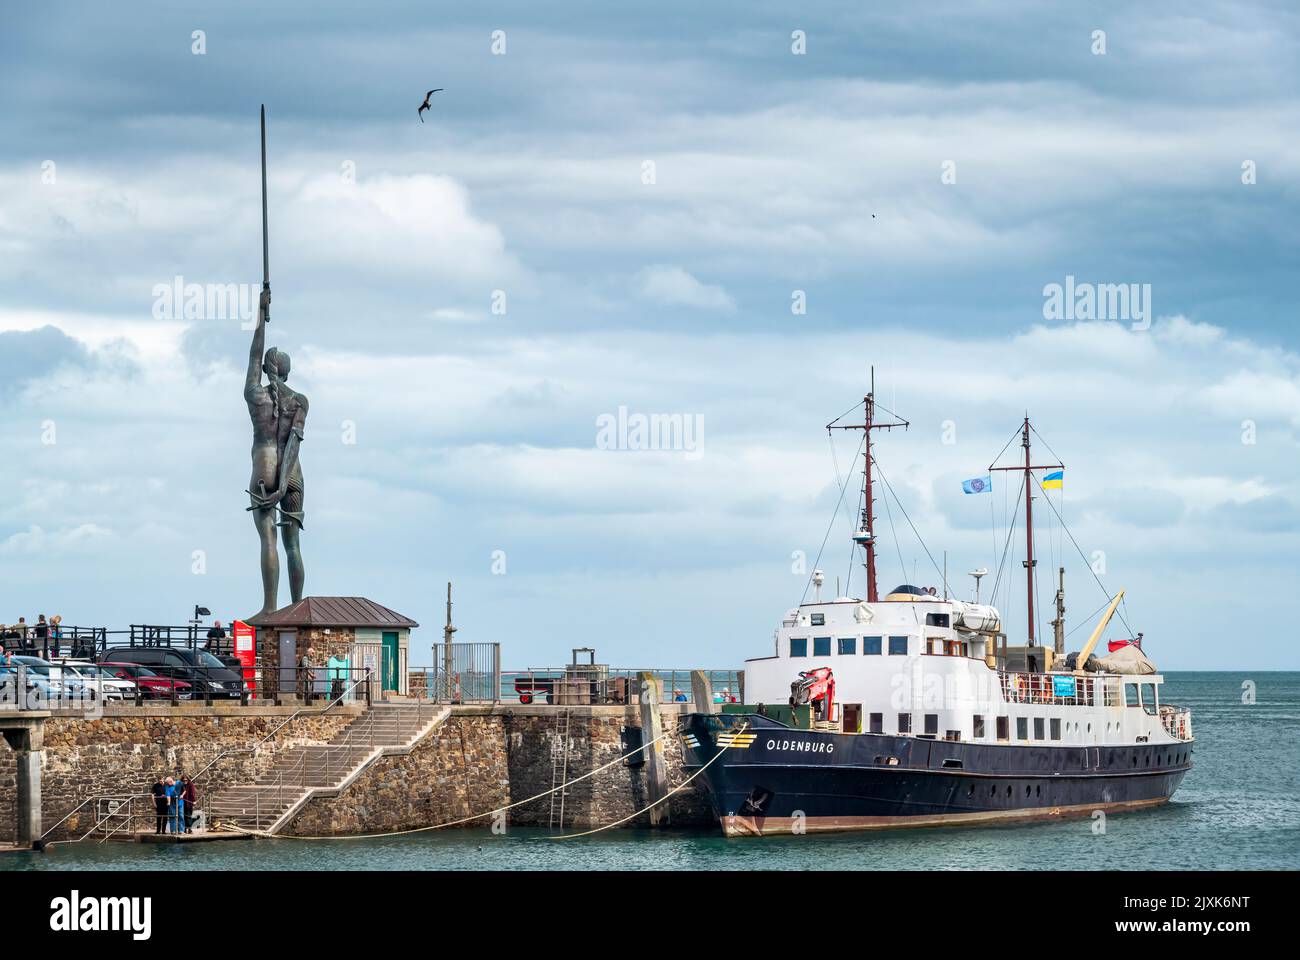 Le navire de ravitaillement et le navire à passagers MV Oldenburg amarrés le long du quai, avec la célèbre statue de Damien Hirst Verity en arrière-plan Banque D'Images